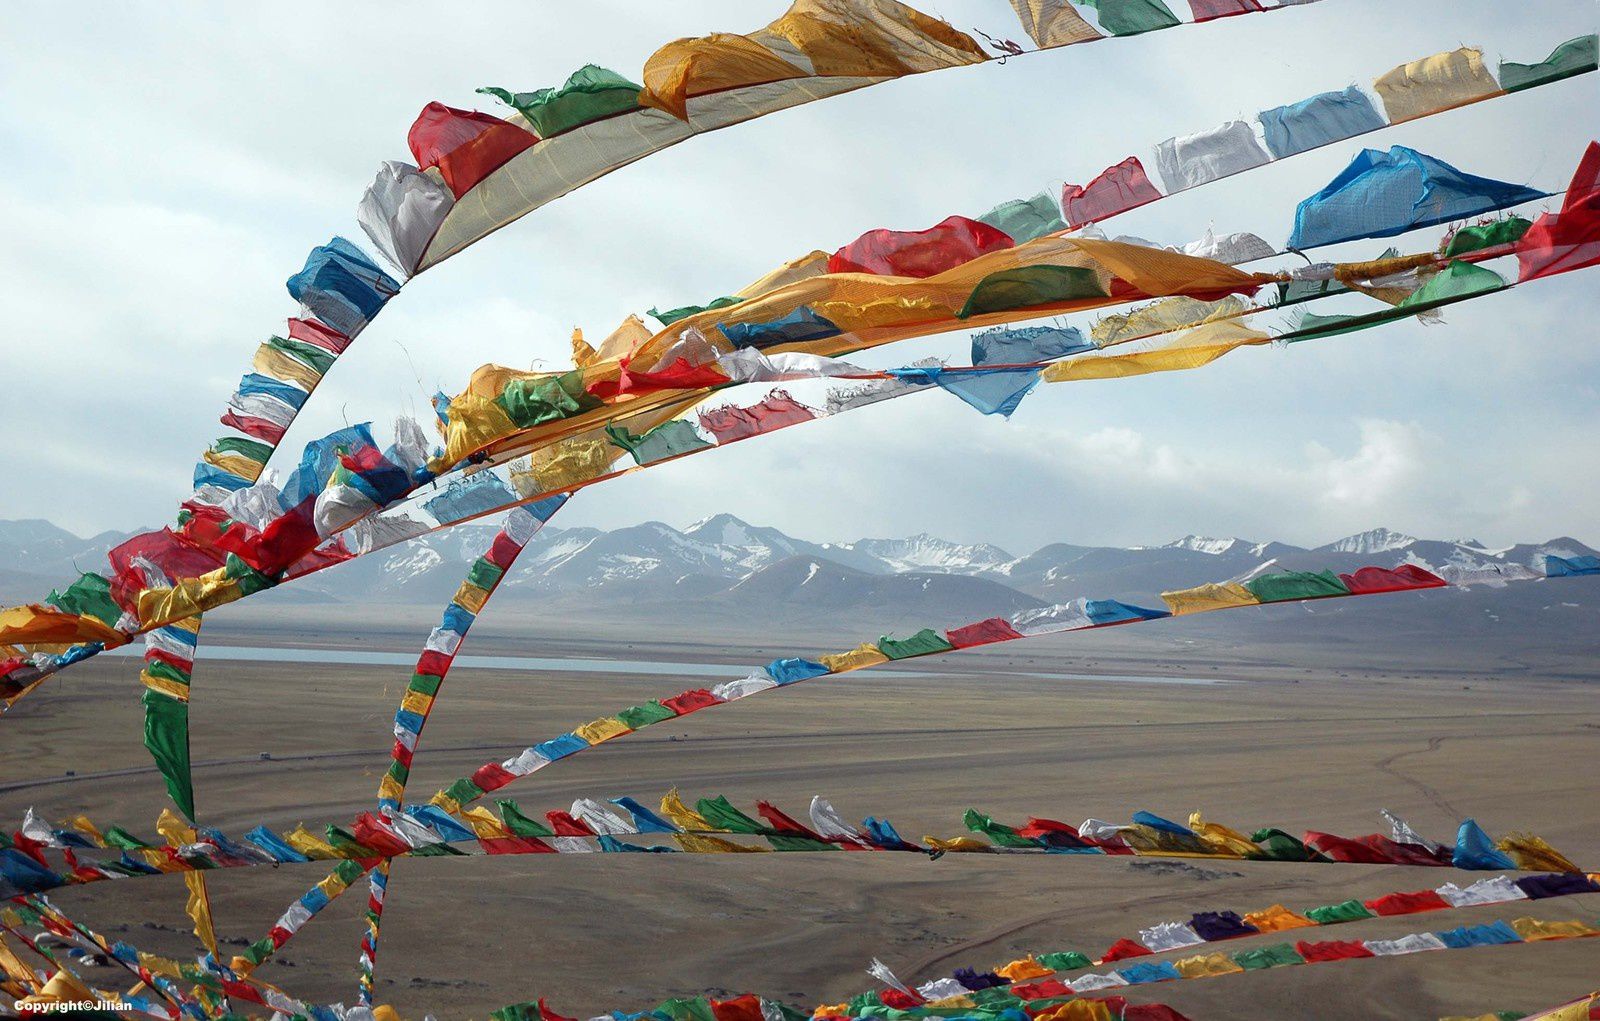 Tibet (1) : La nature et les dieux - 西藏 (1) : 神于大自然